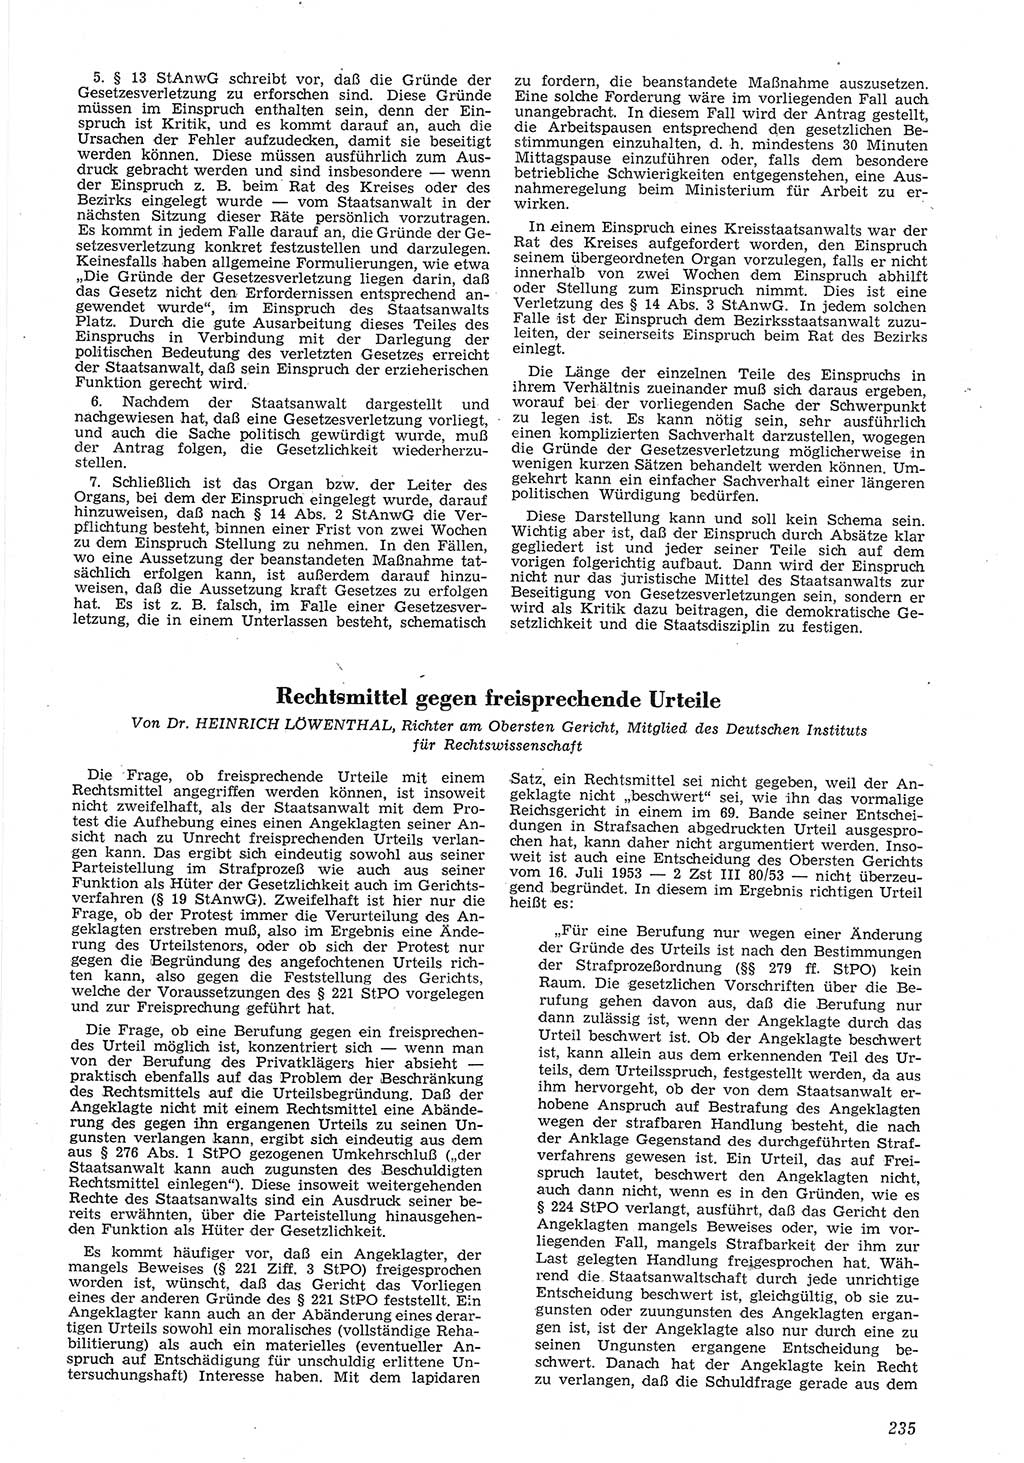 Neue Justiz (NJ), Zeitschrift für Recht und Rechtswissenschaft [Deutsche Demokratische Republik (DDR)], 8. Jahrgang 1954, Seite 235 (NJ DDR 1954, S. 235)